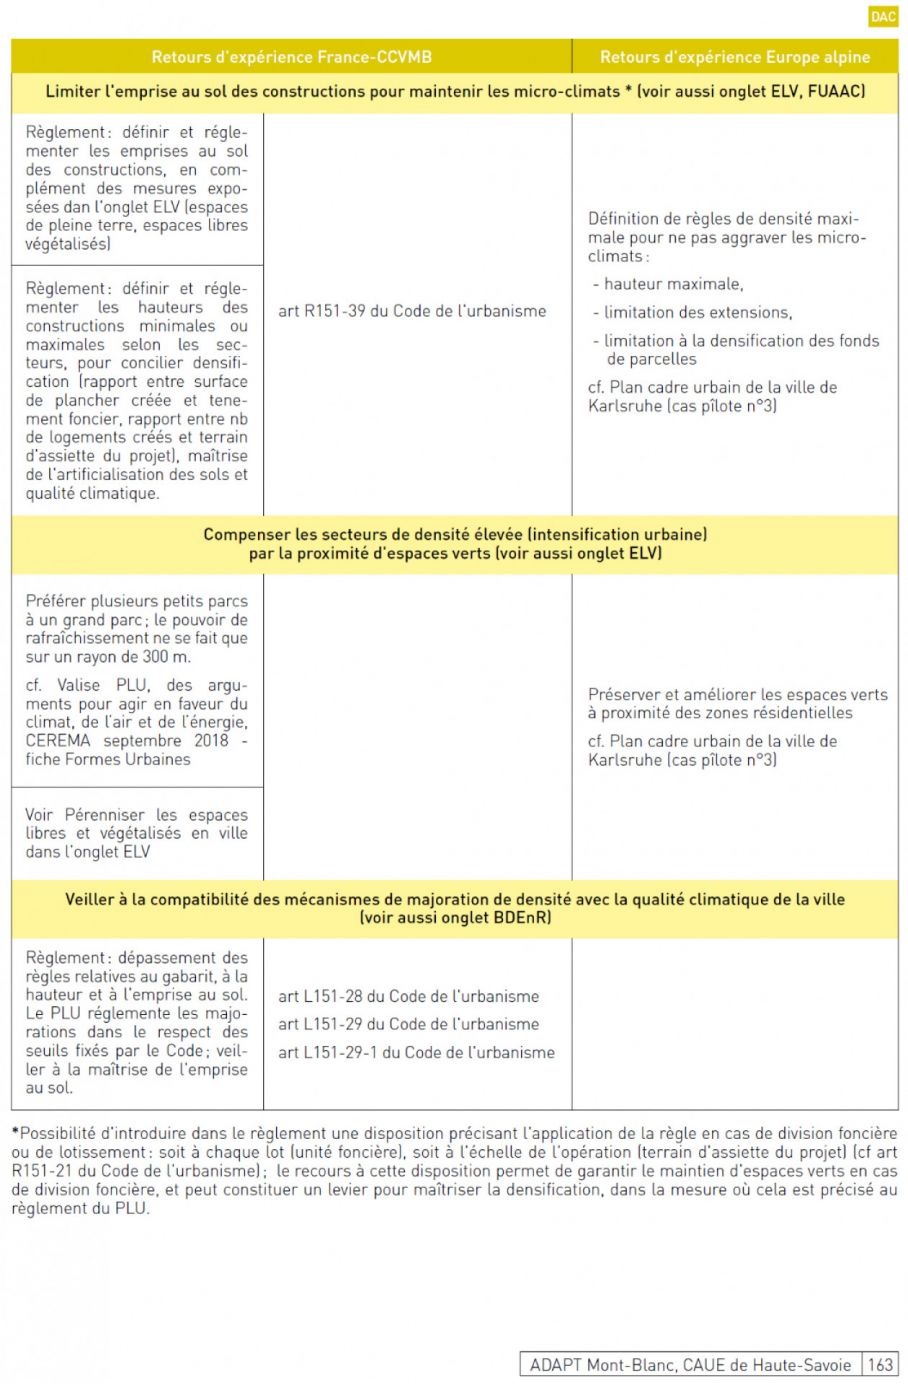 2/ Boîte à outil « adaptation au changement climatique » - CAUE Haute-Savoie extrait p162 (synthèse) et schéma : vers une transition climatique des documents de planification sur l’EMB